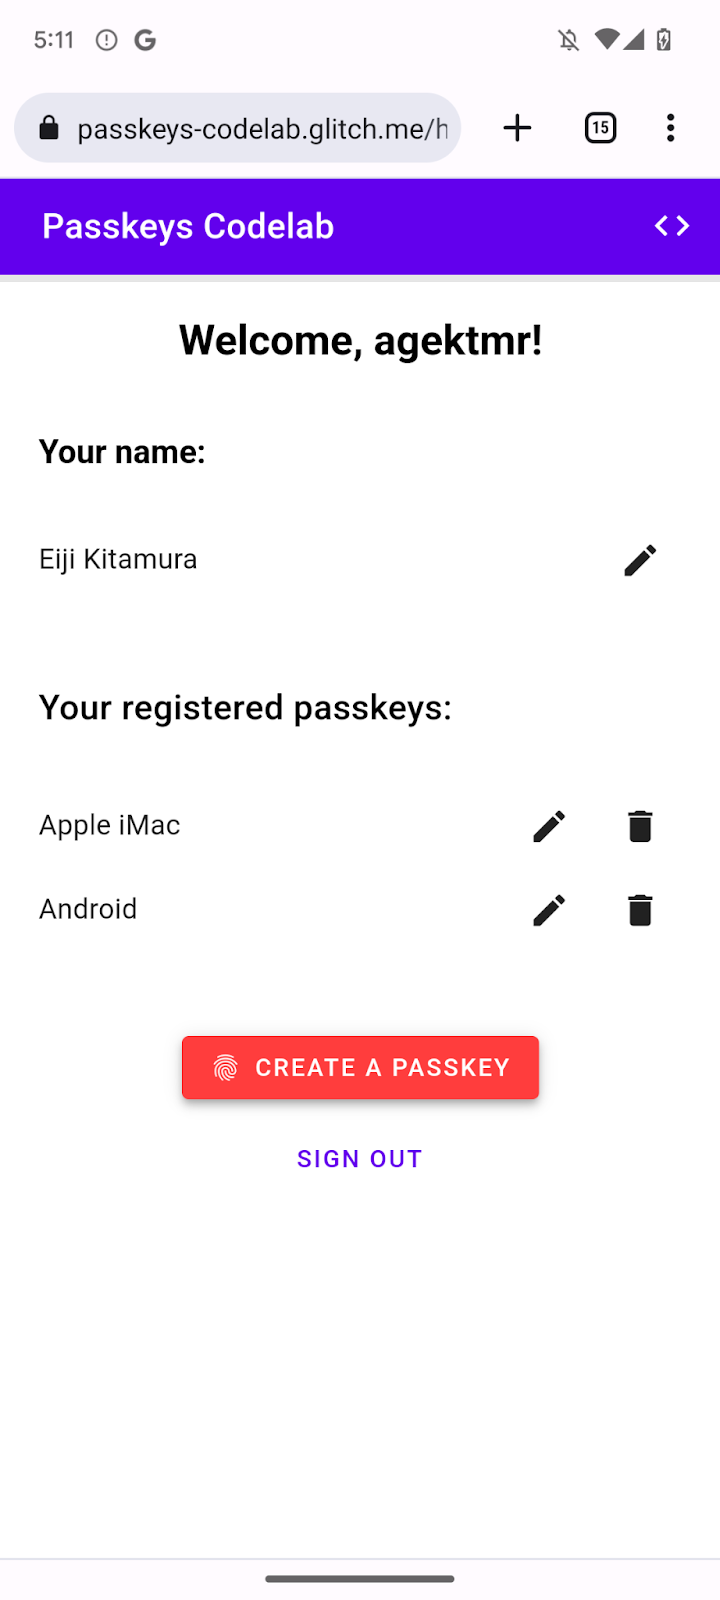 Chaves de acesso registradas listadas na /página inicial